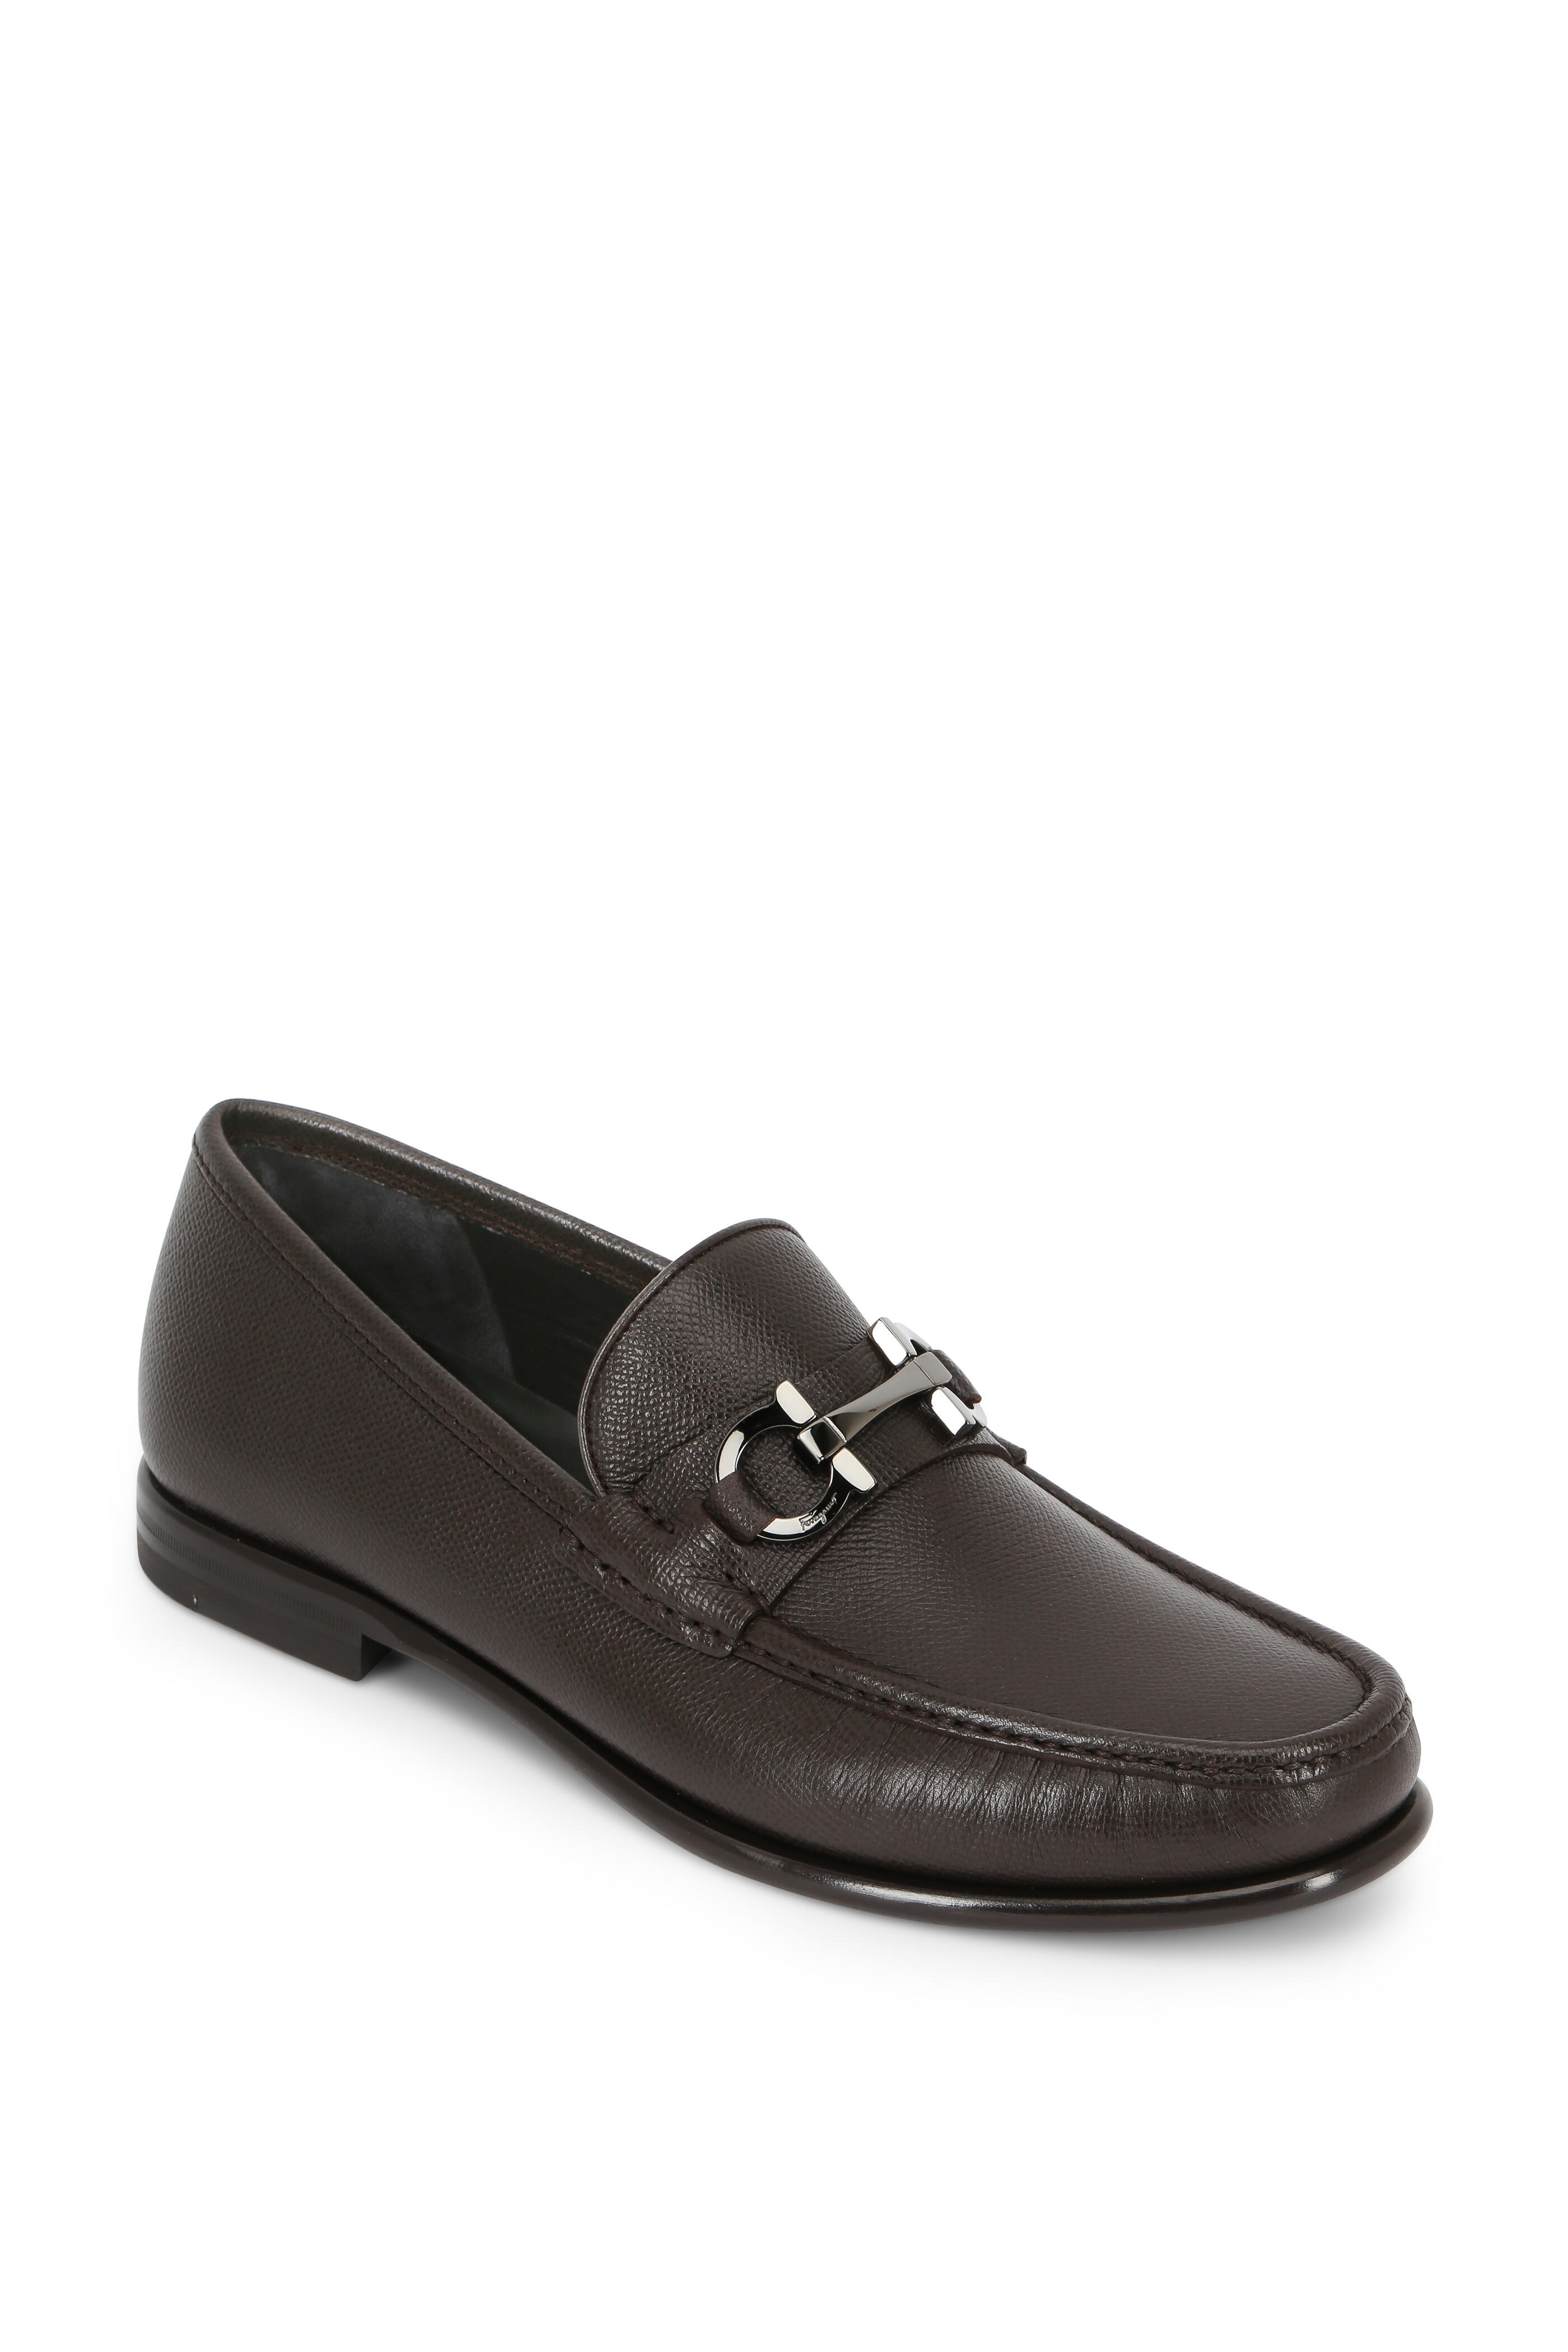 Ferragamo - Crown Dark Brown Grained Leather Bit Loafer